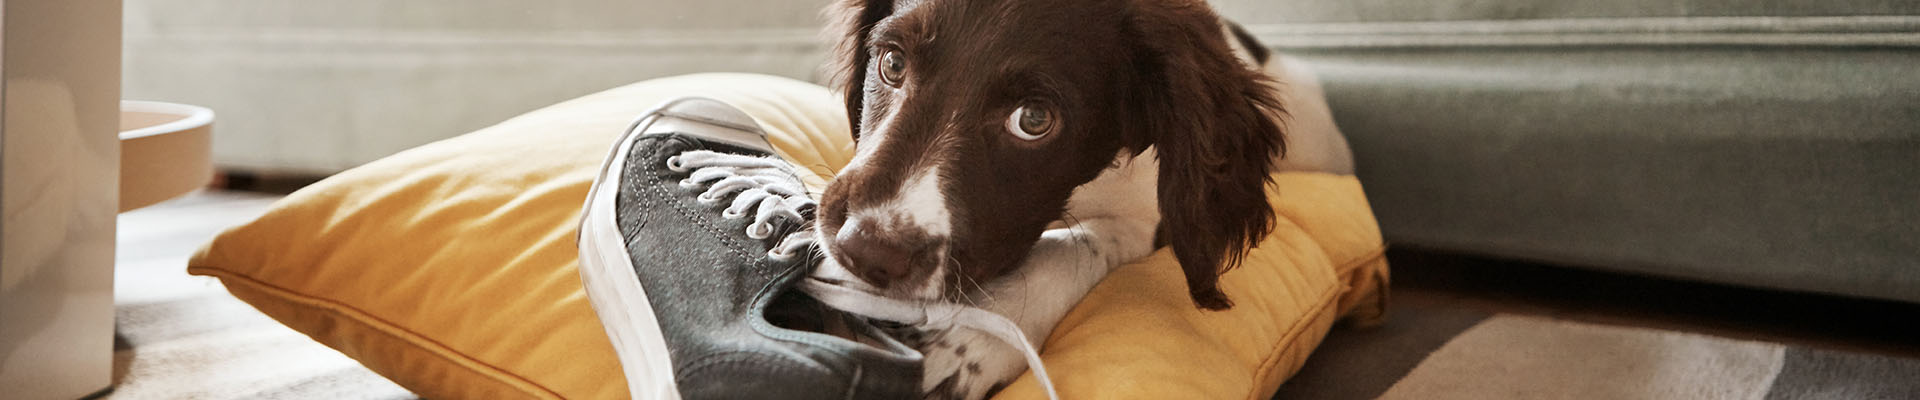 perro masticando un zapato marrón